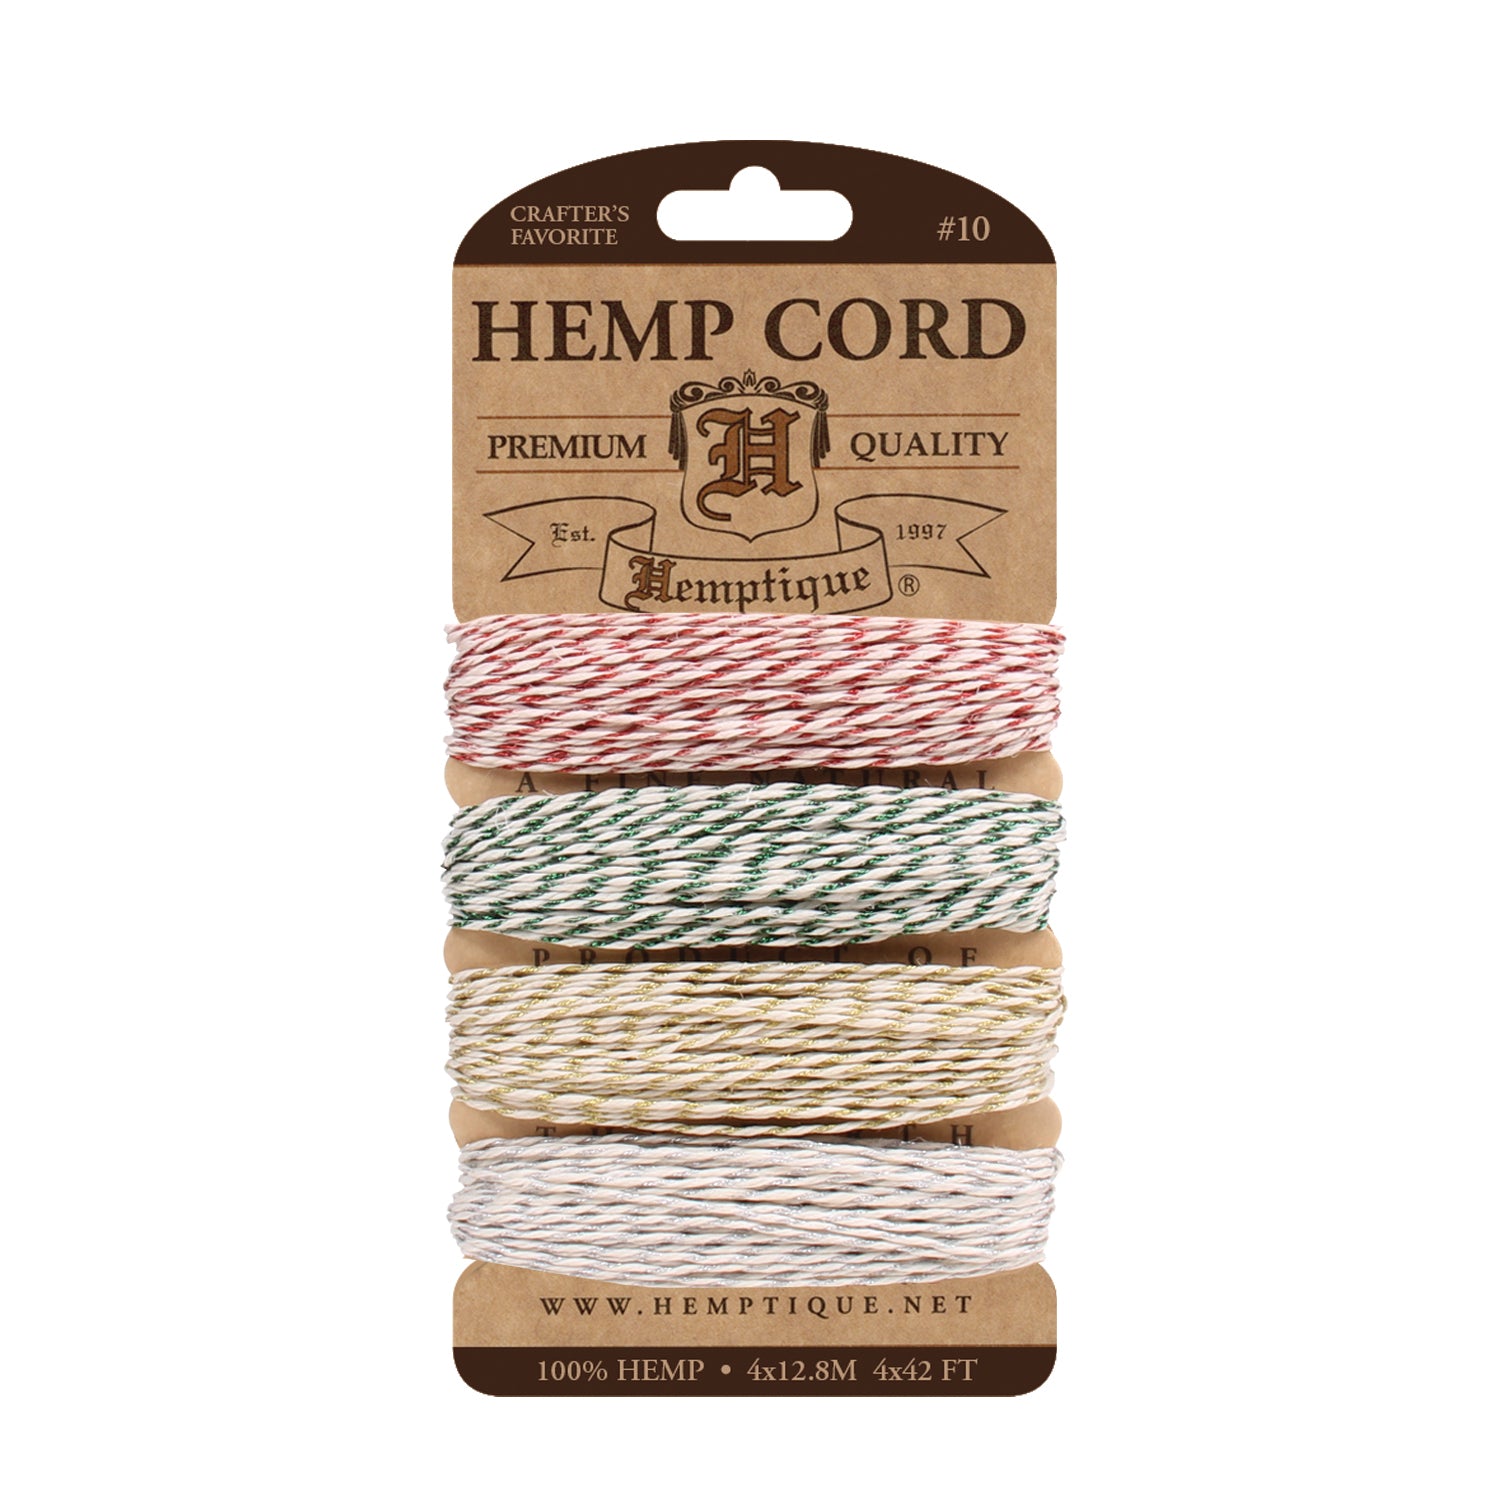 Hemp Cord Card 10 lb metallic twine